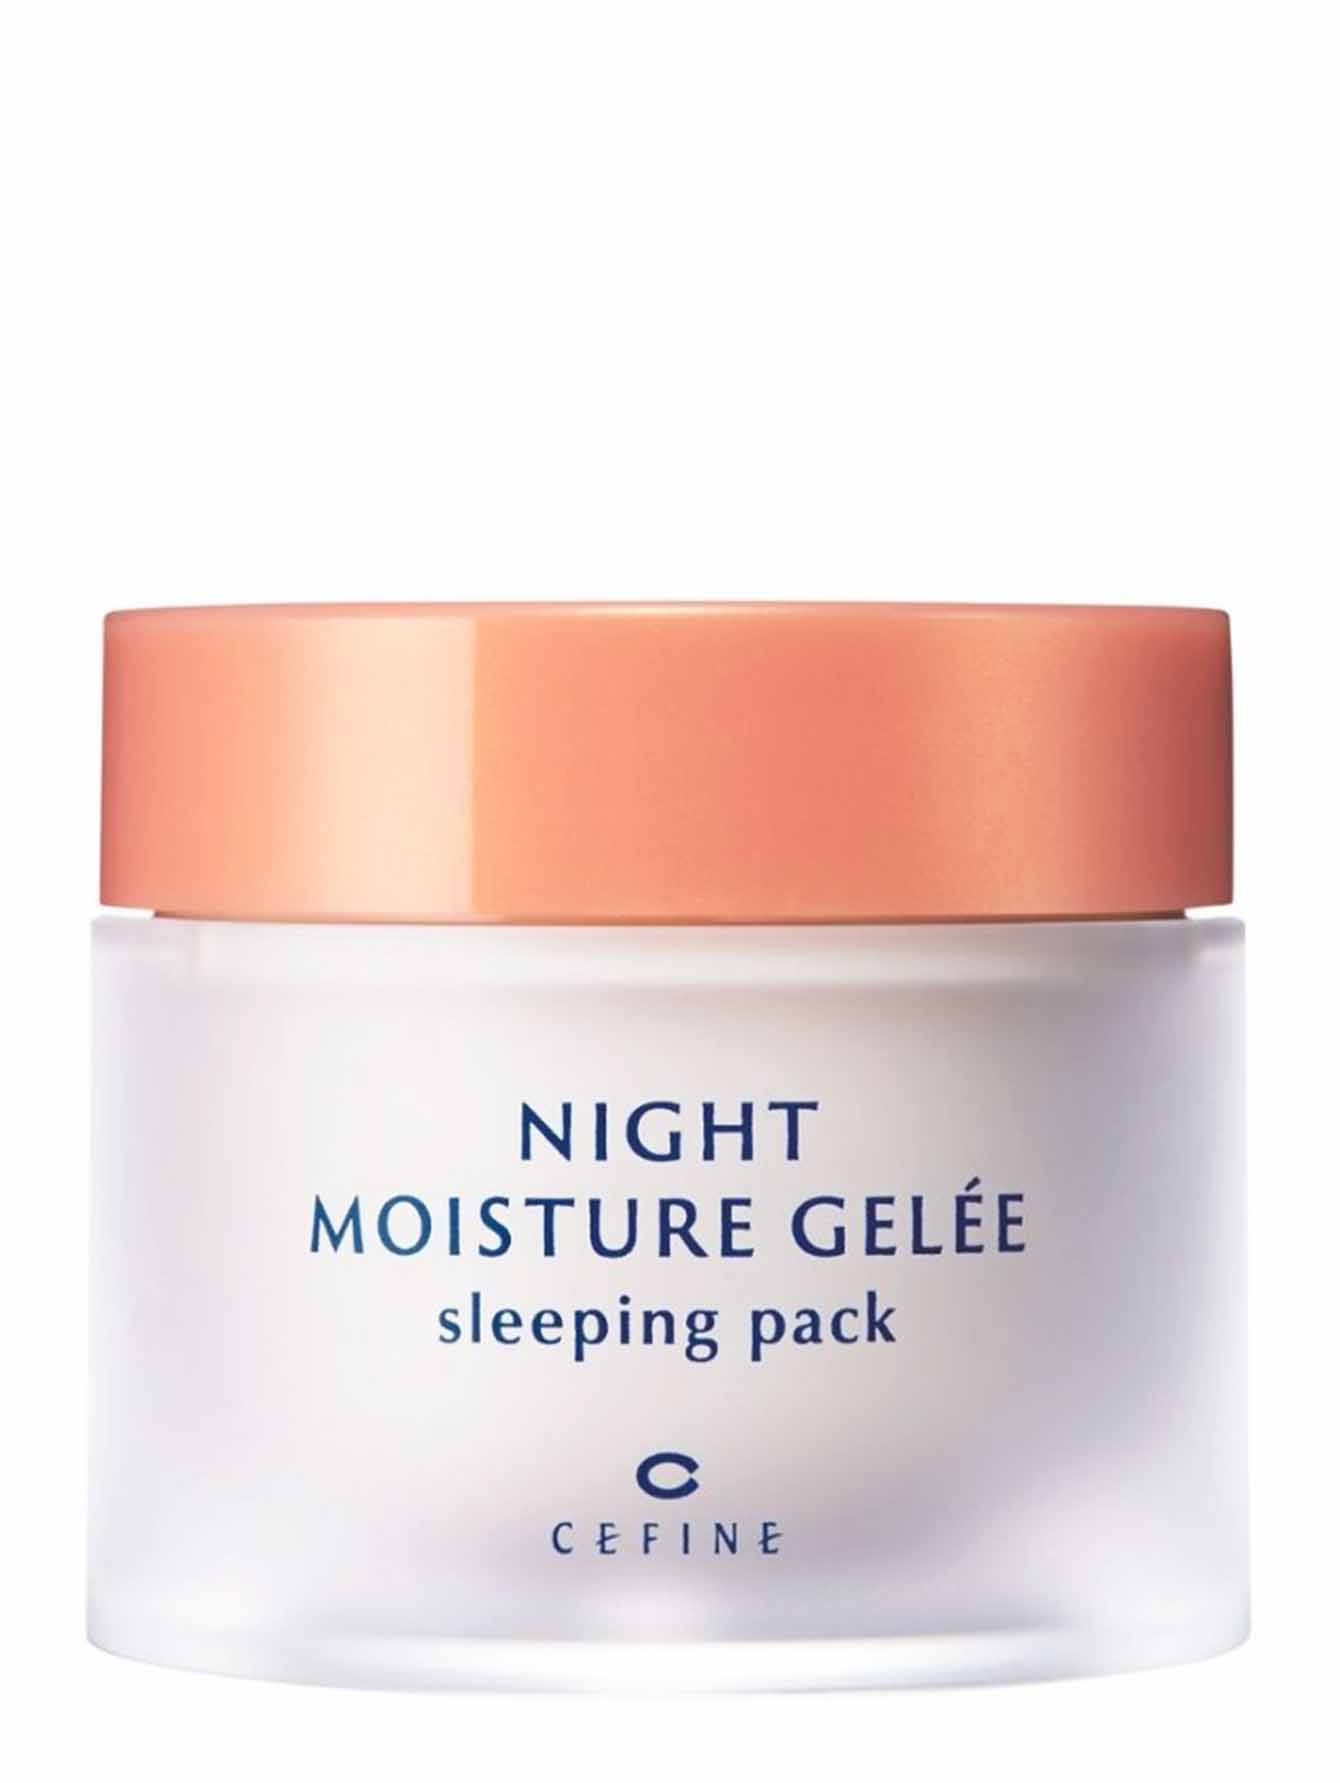 Желе ночное увлажняющее для лица Night Moisture Gelee, 80 г - Общий вид